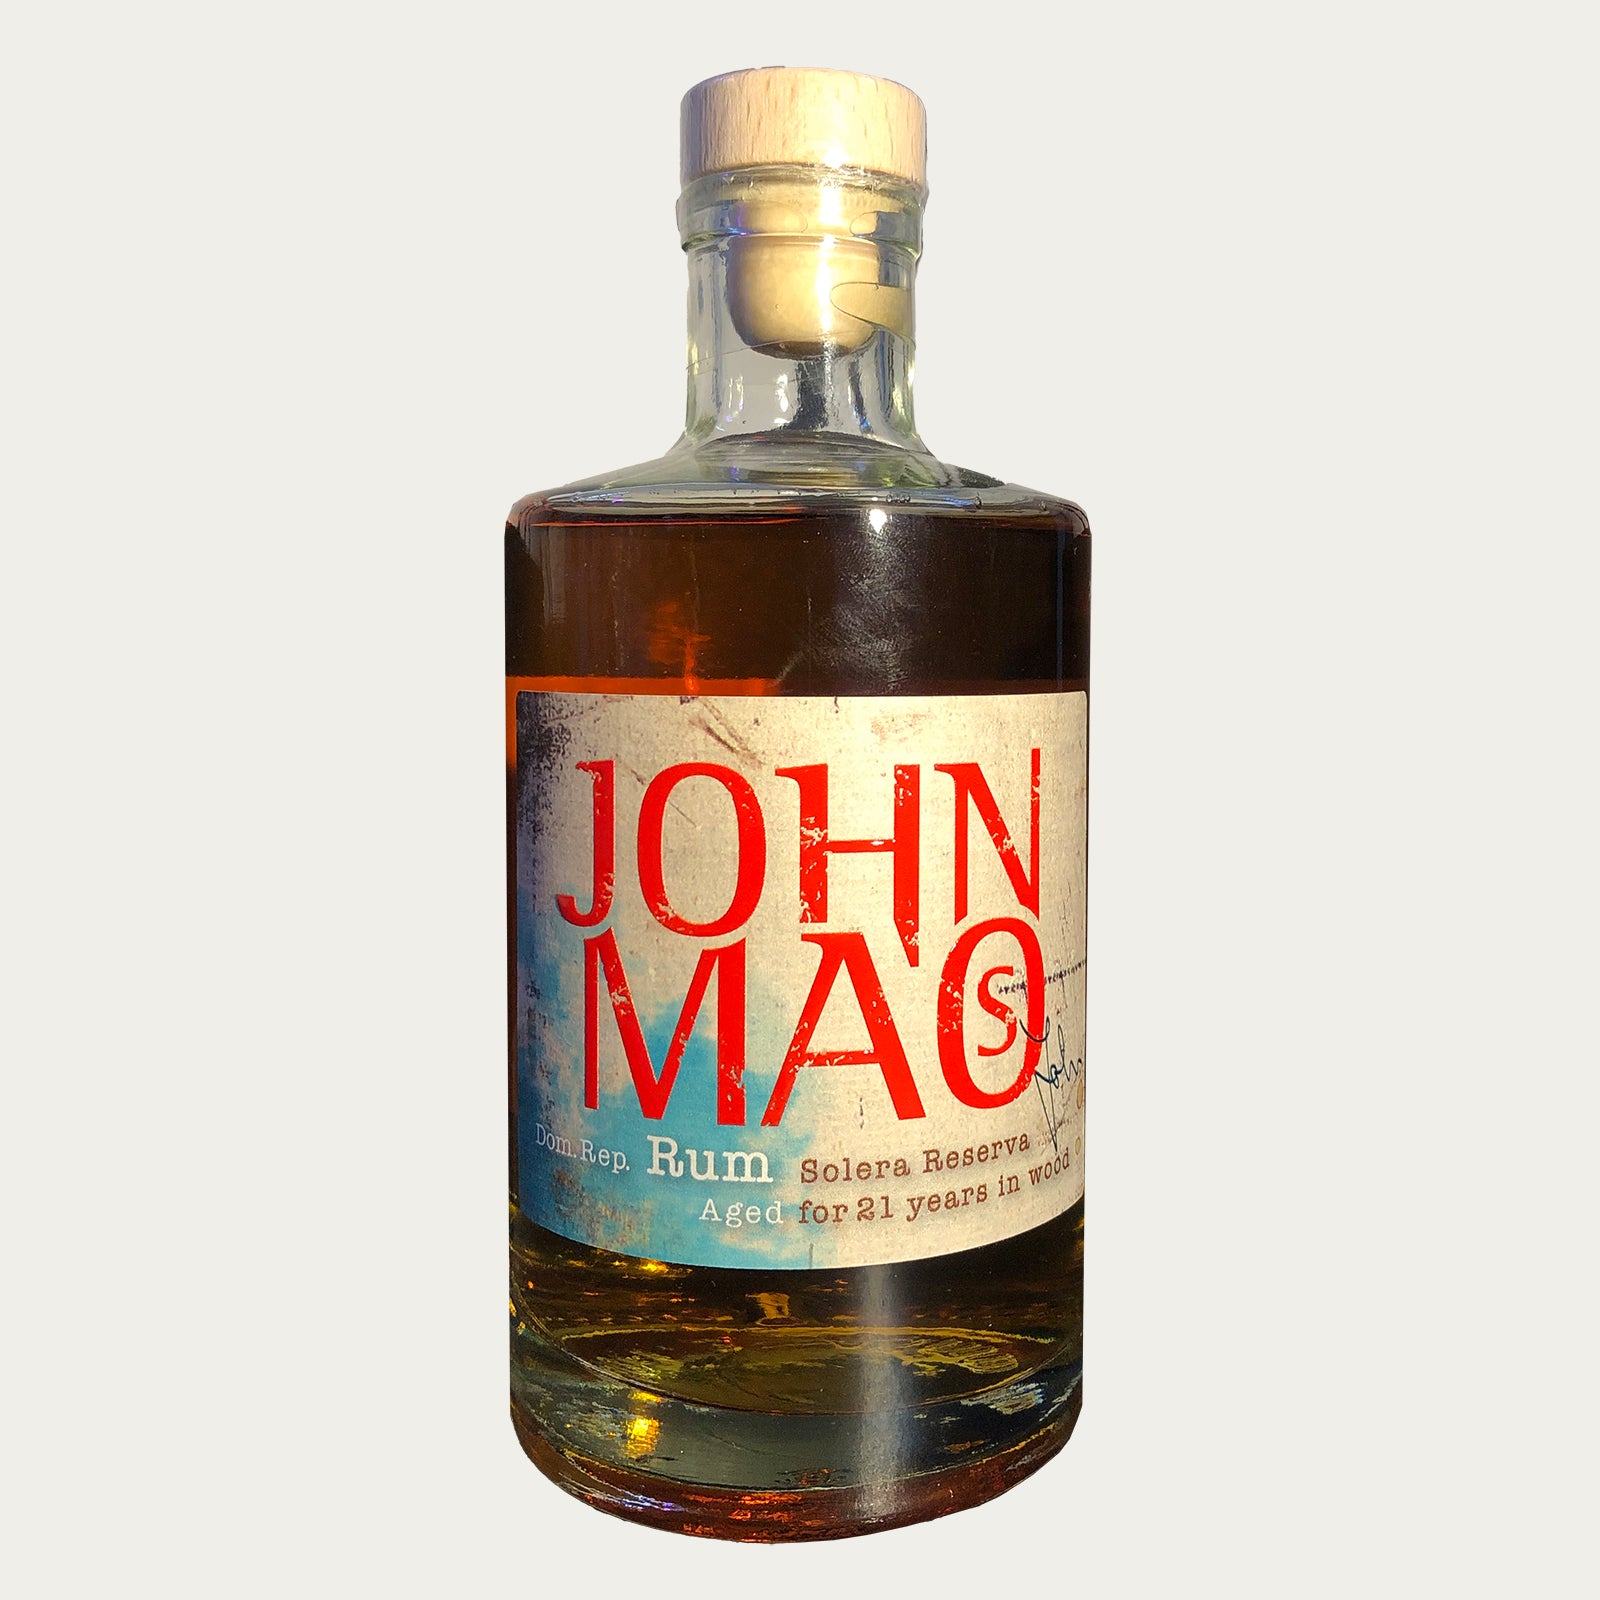 John Maos Rum